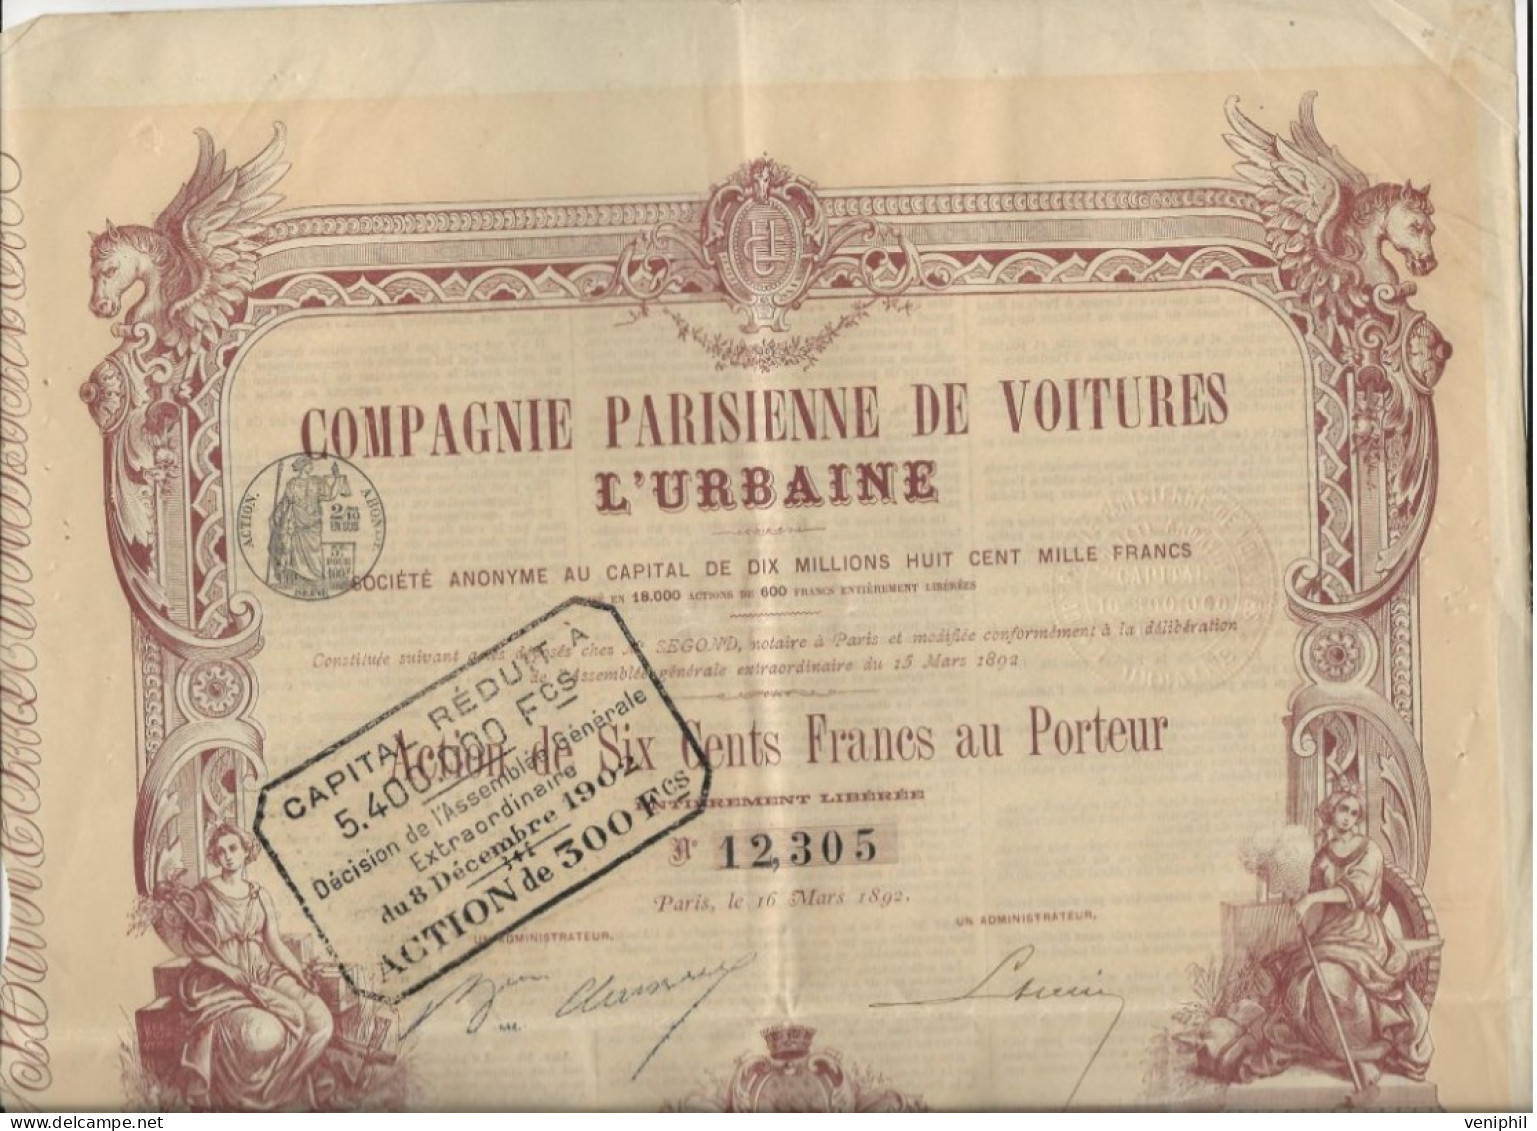 COMPAGNIE PARISIENNE DE VOITURES L- ACTION ILLUSTREE DE SIX CENTS FRANCS - ANNEE 1892 - Automobilismo